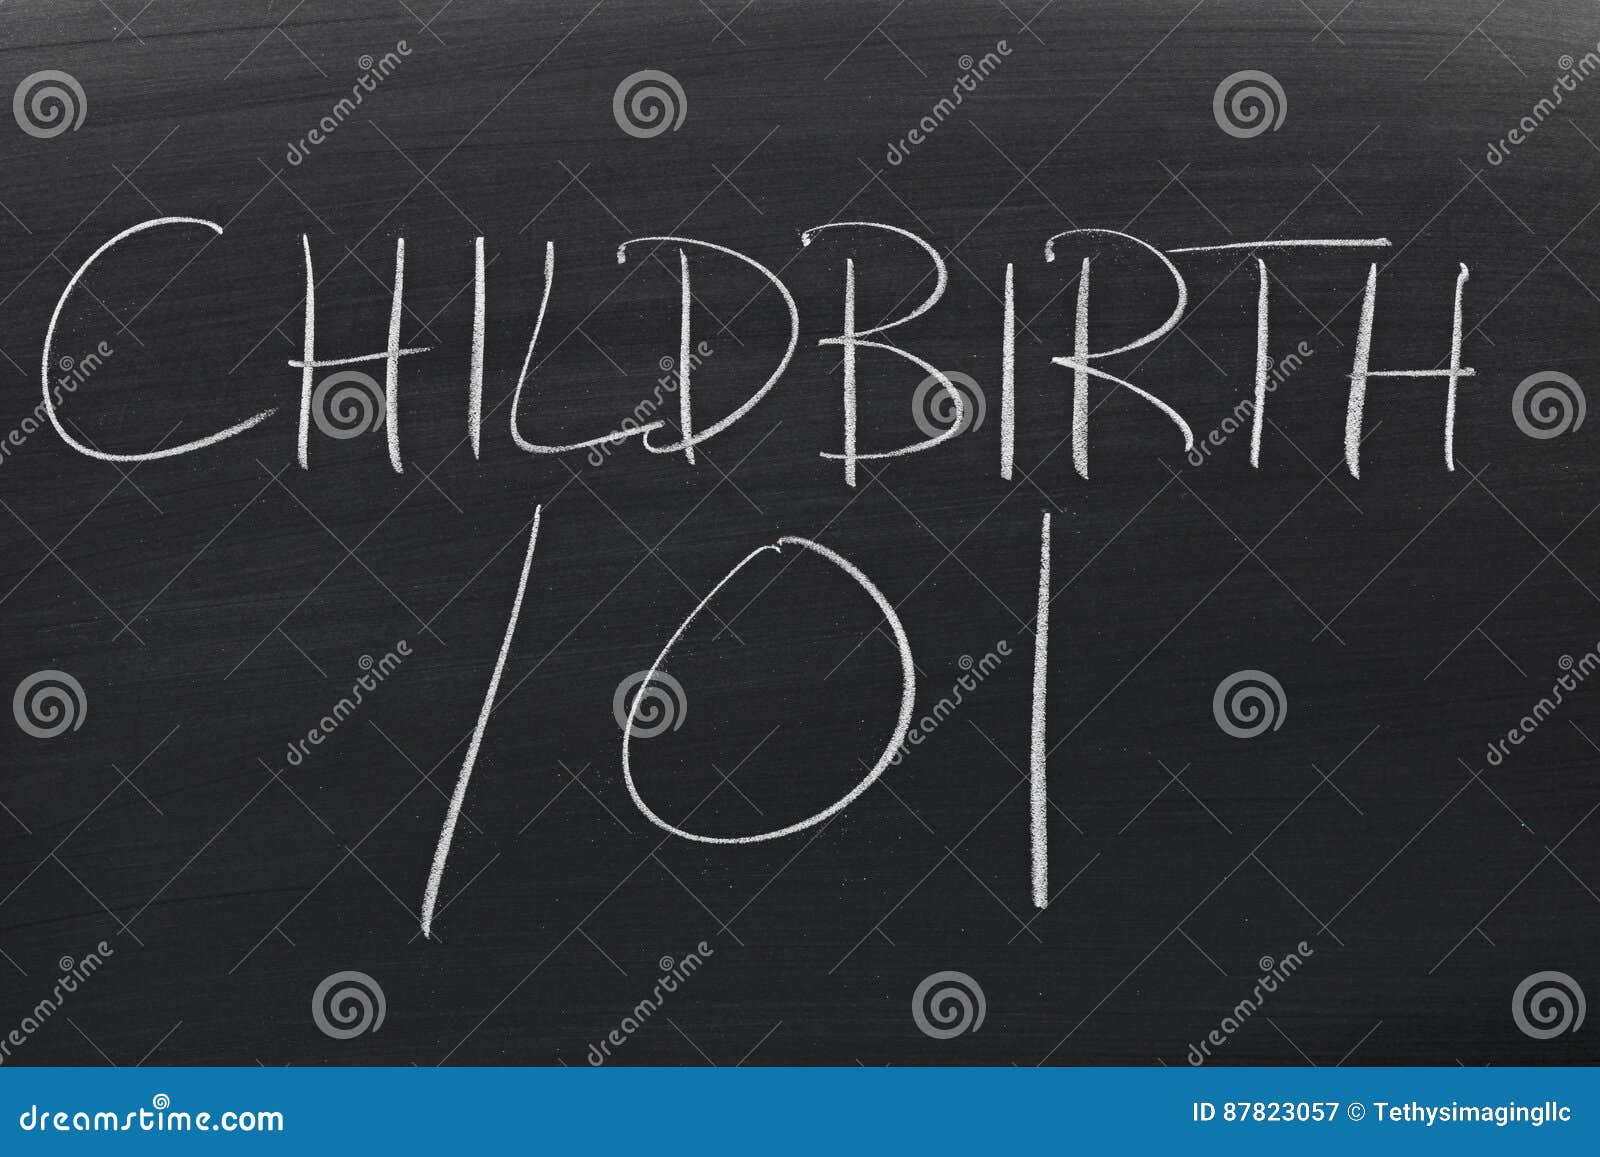 childbirth 101 on a blackboard